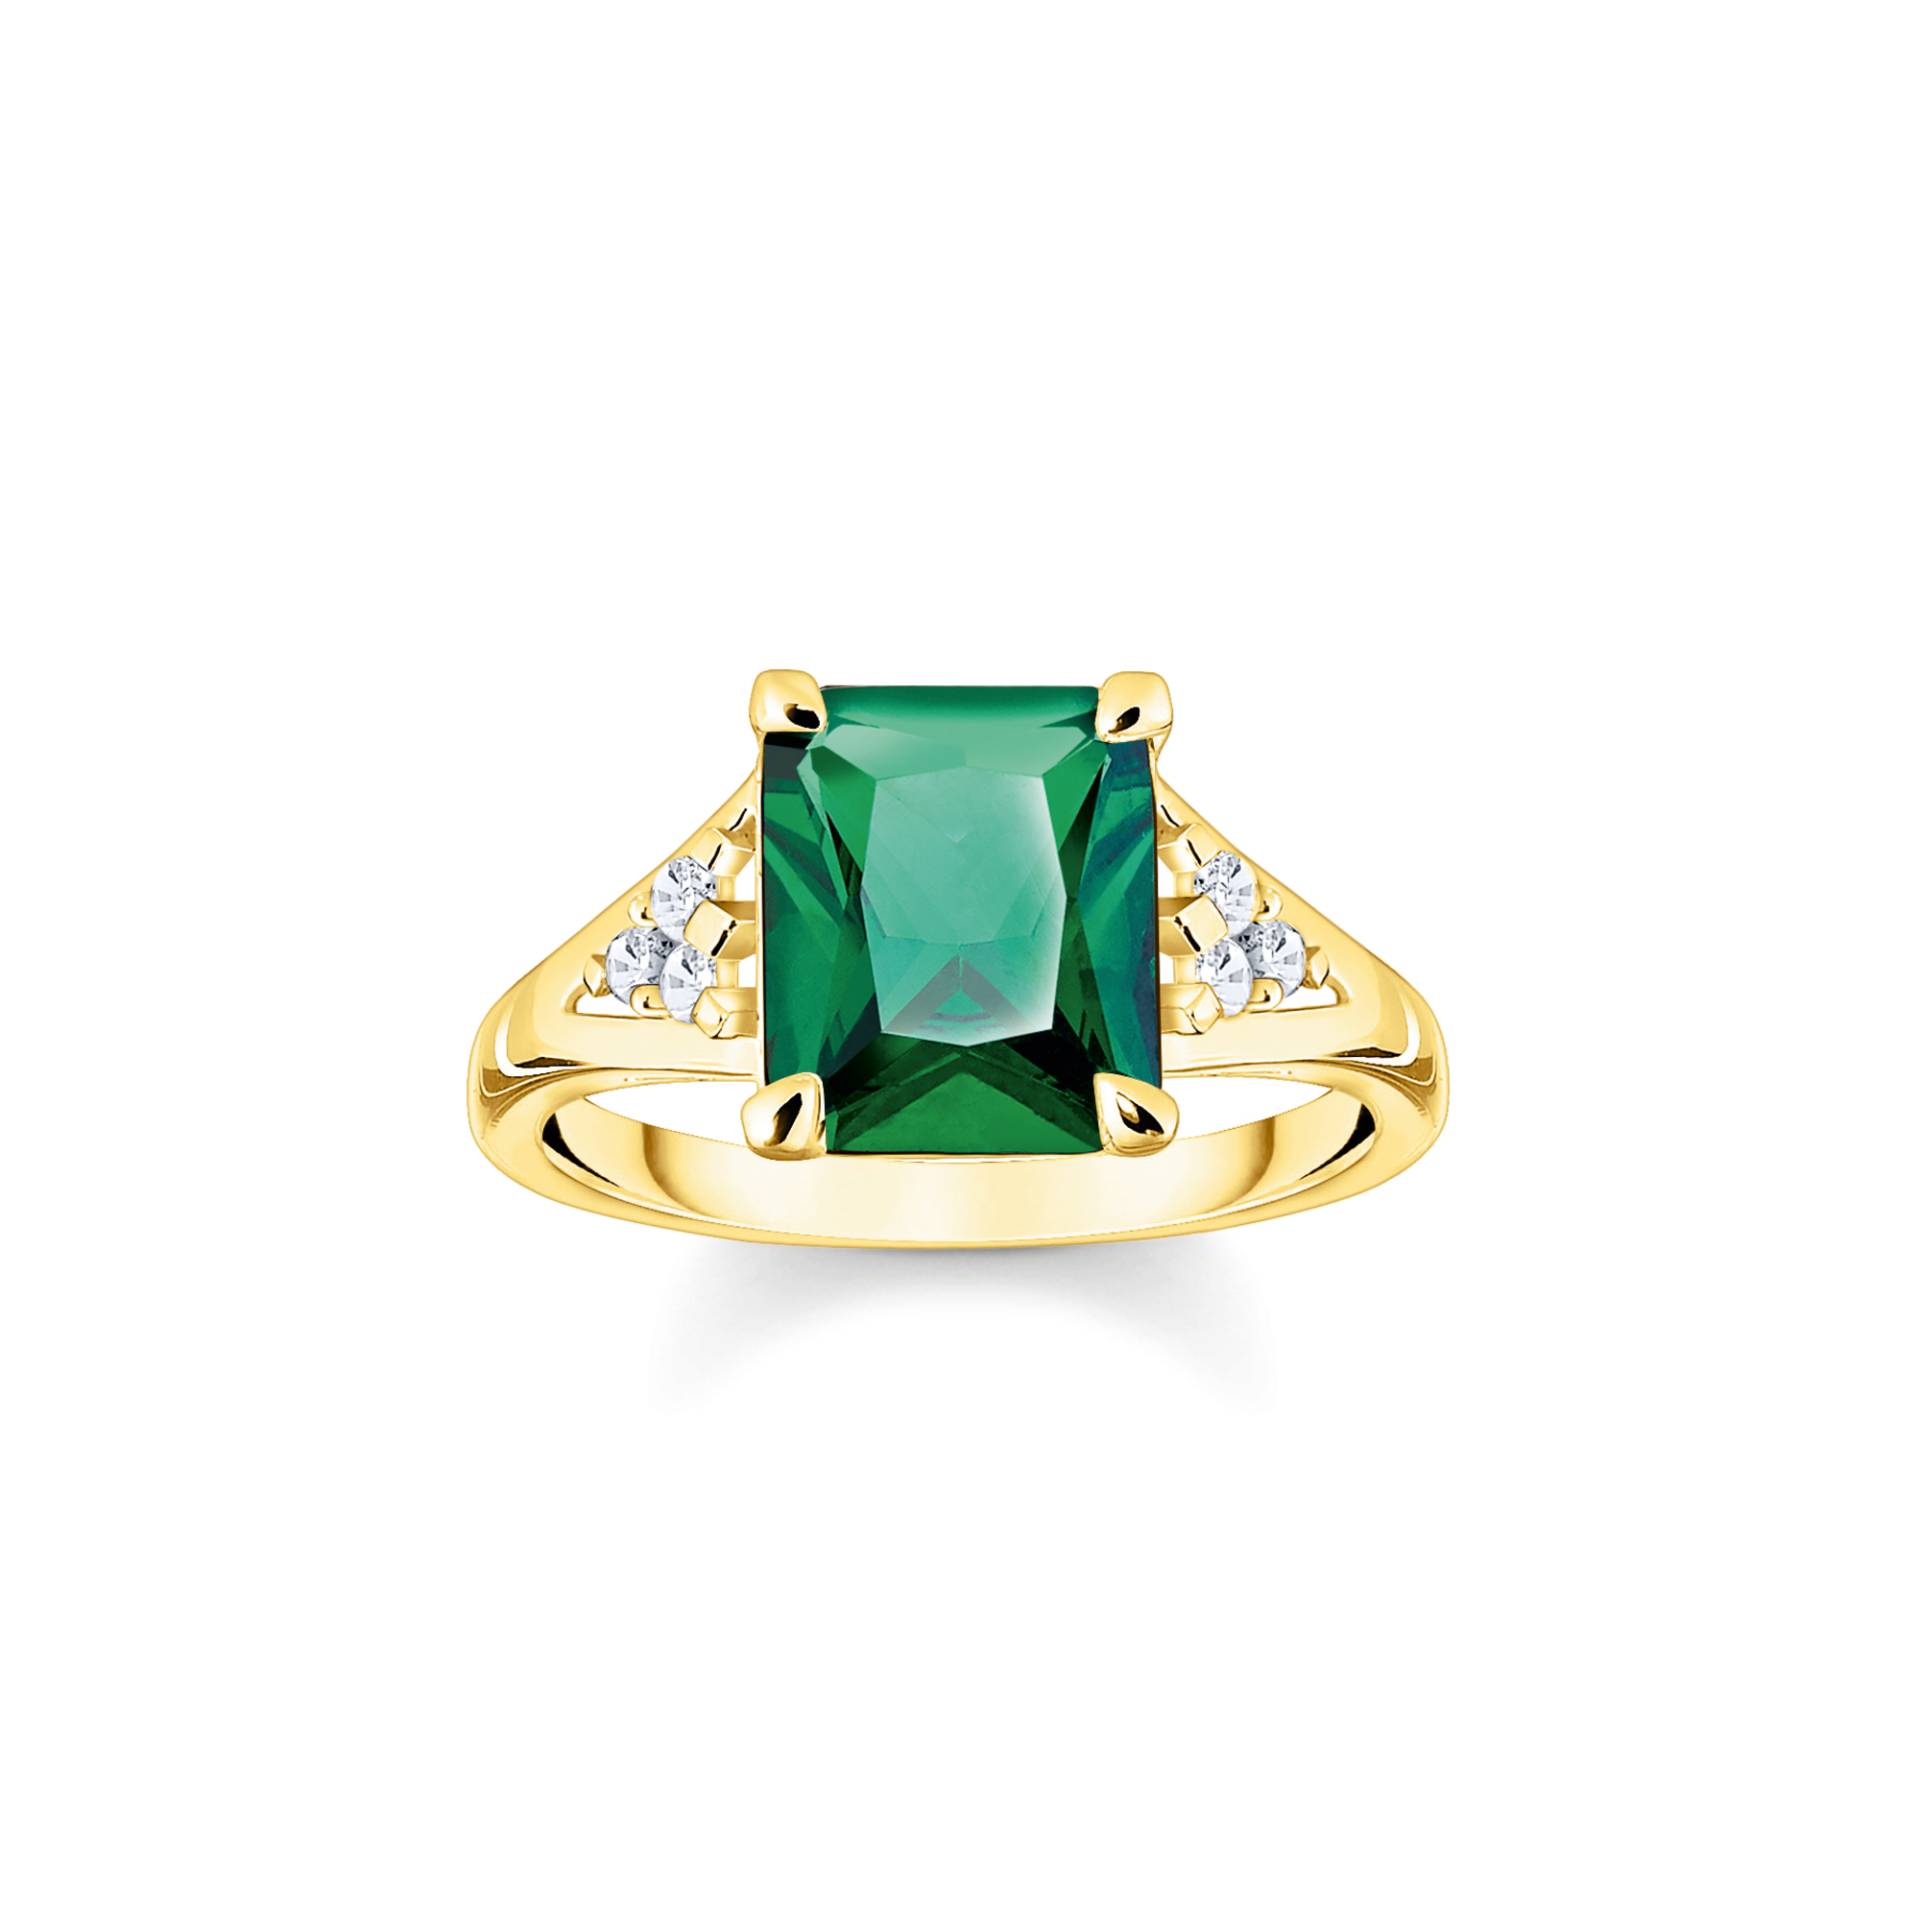 Thomas Sabo Ring mit grünen und weißen Steinen vergoldet grün TR2362-971-6-54 von Thomas Sabo